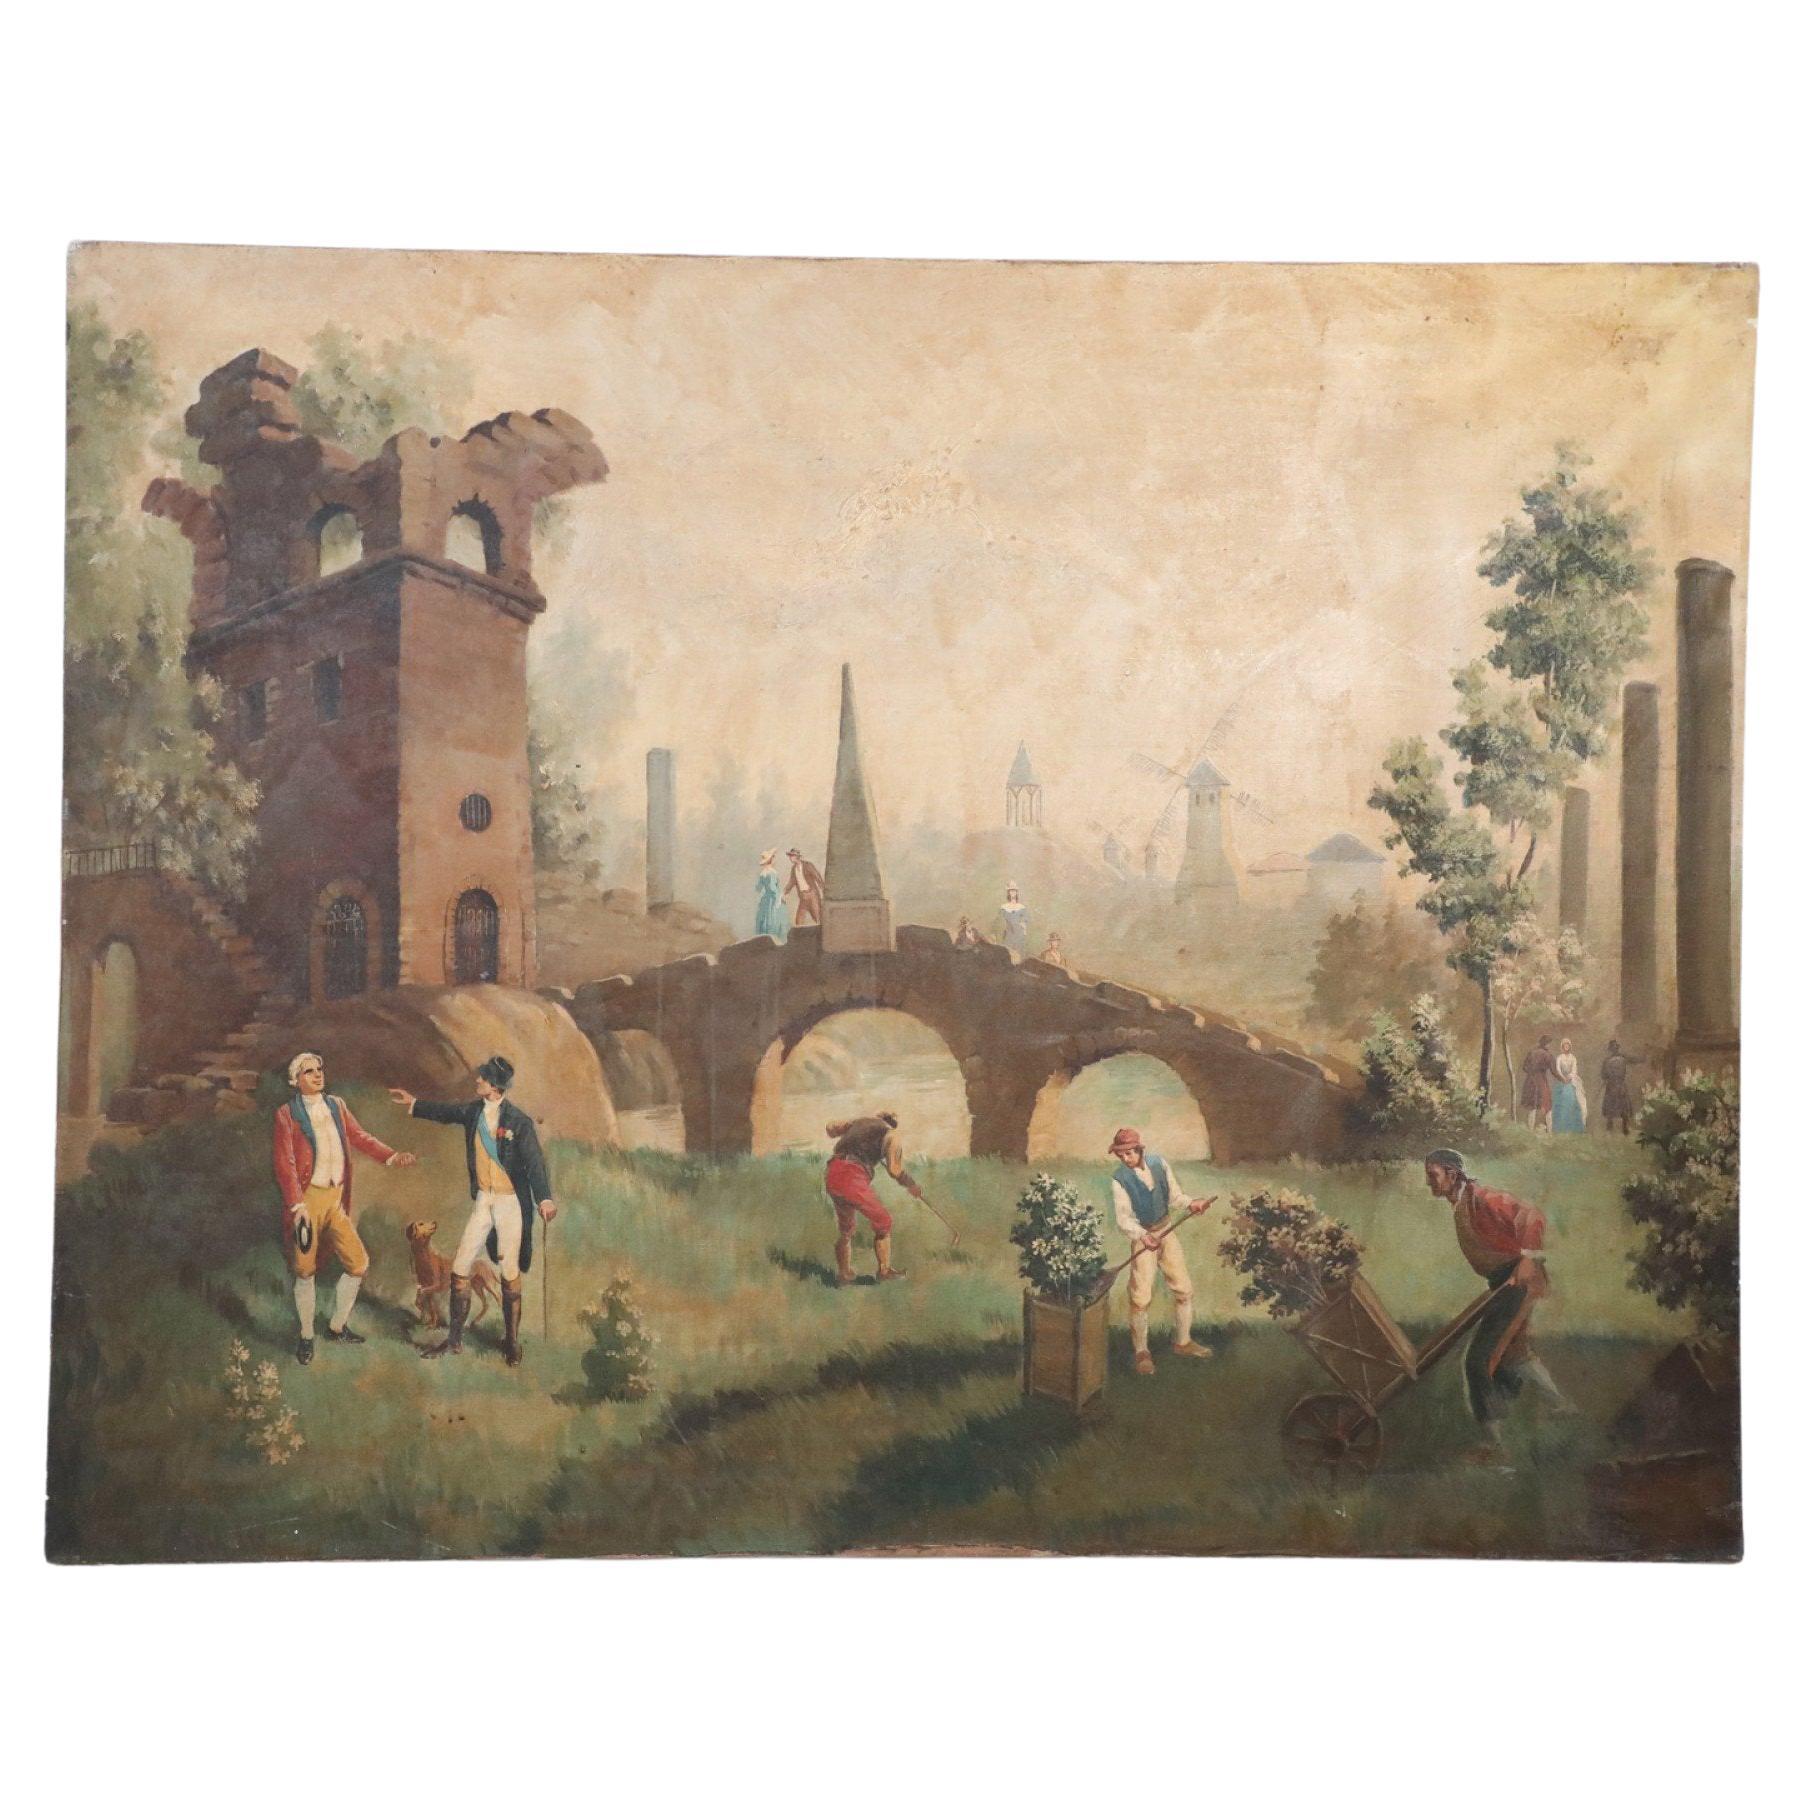 Gardeners Among the Ruins - Peinture à l'huile sur toile